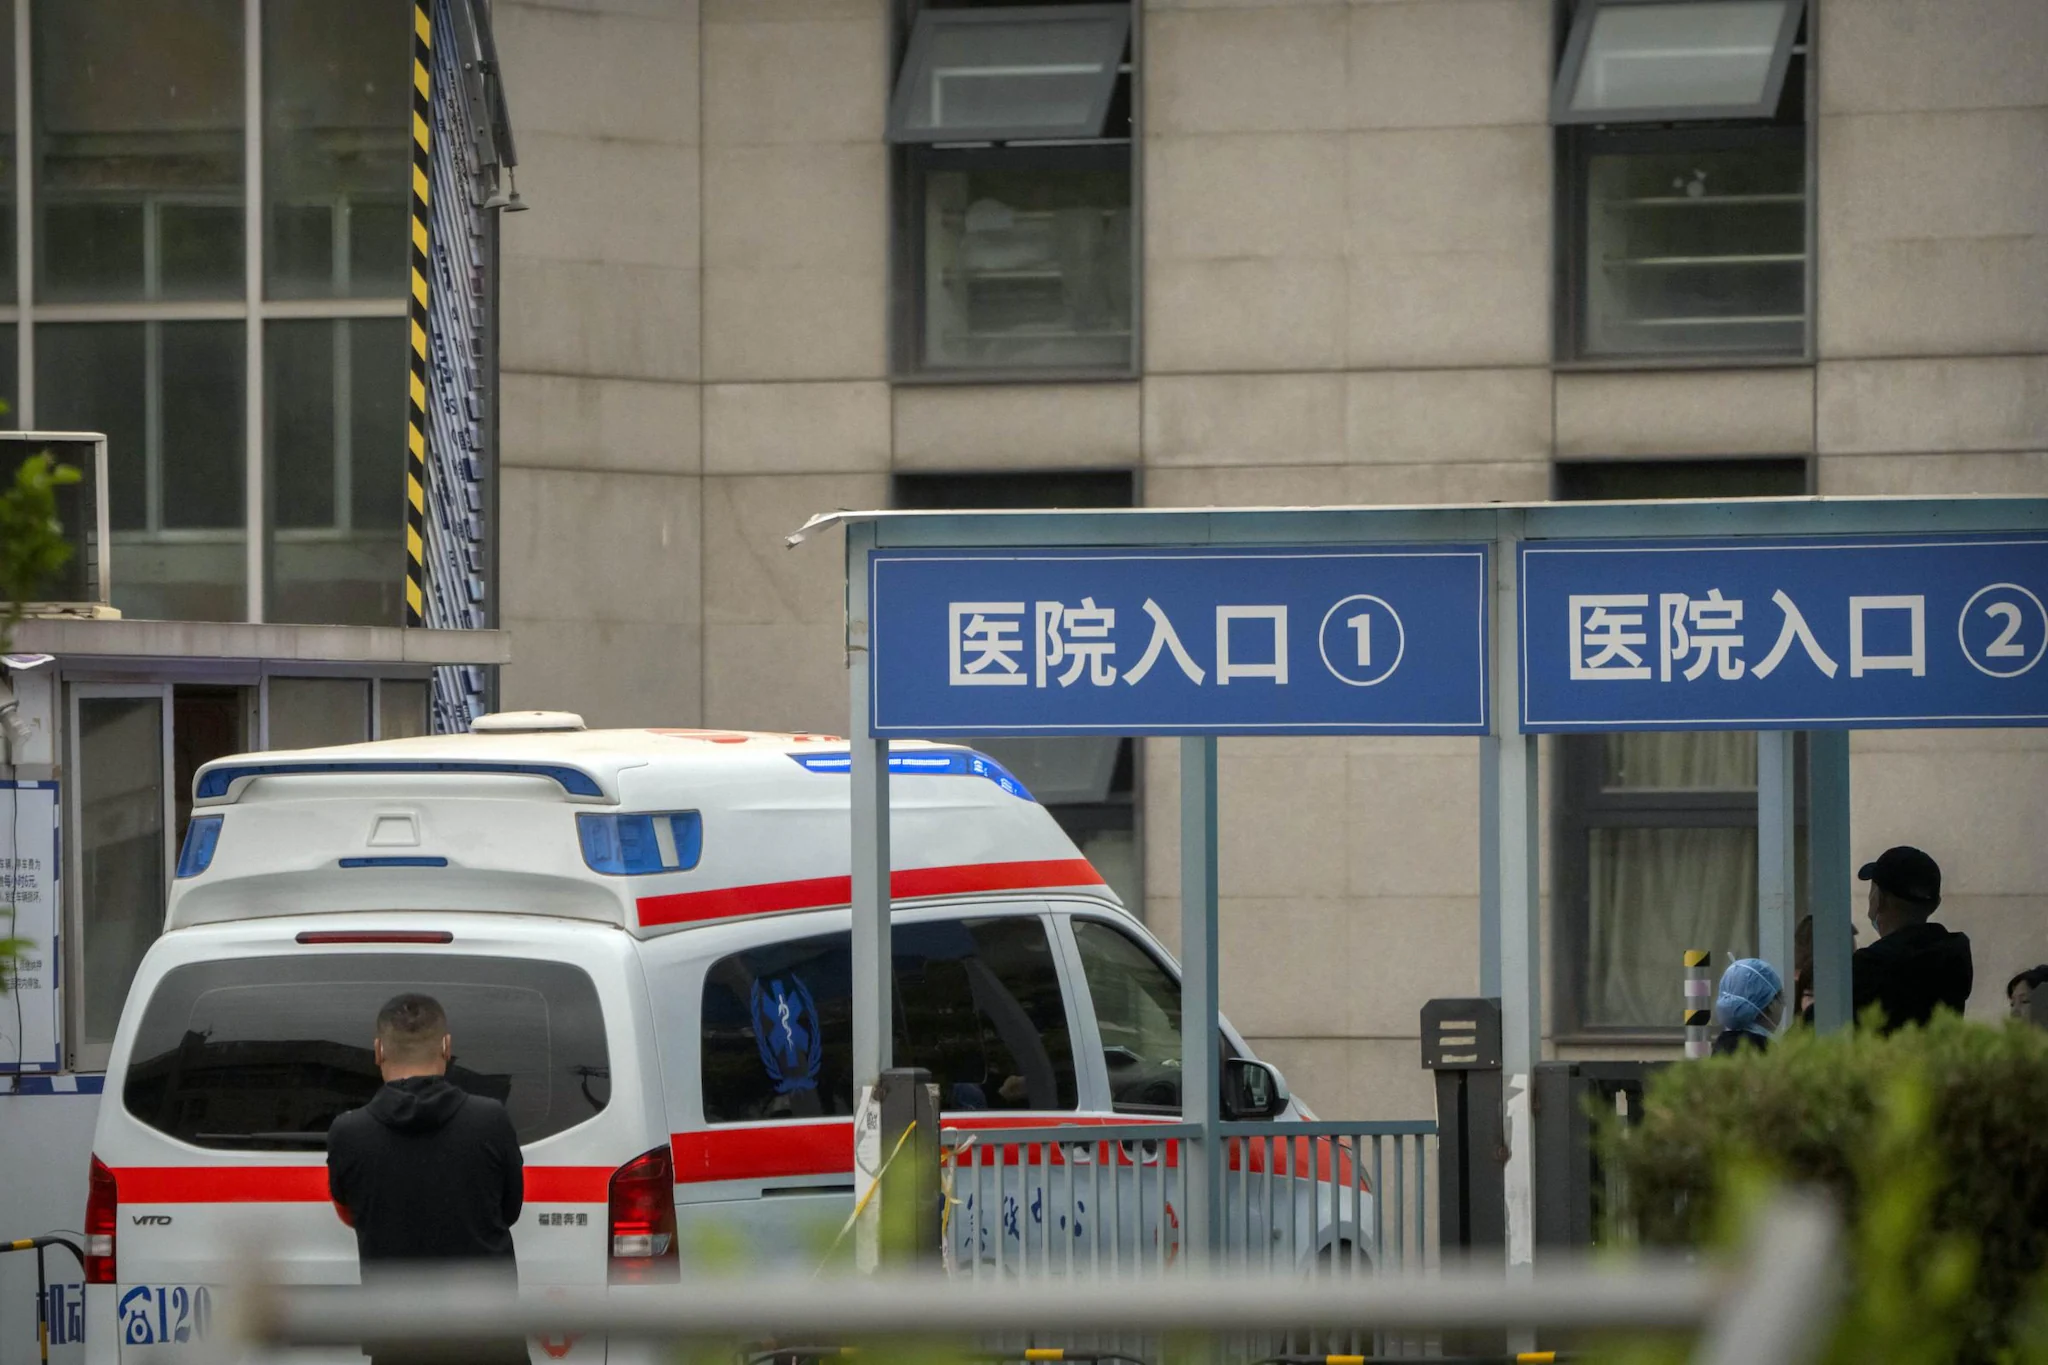 Attacco a un ospedale cinese, un aggressore accoltella almeno 10 persone nello Yunnan: ci sono morti e feriti